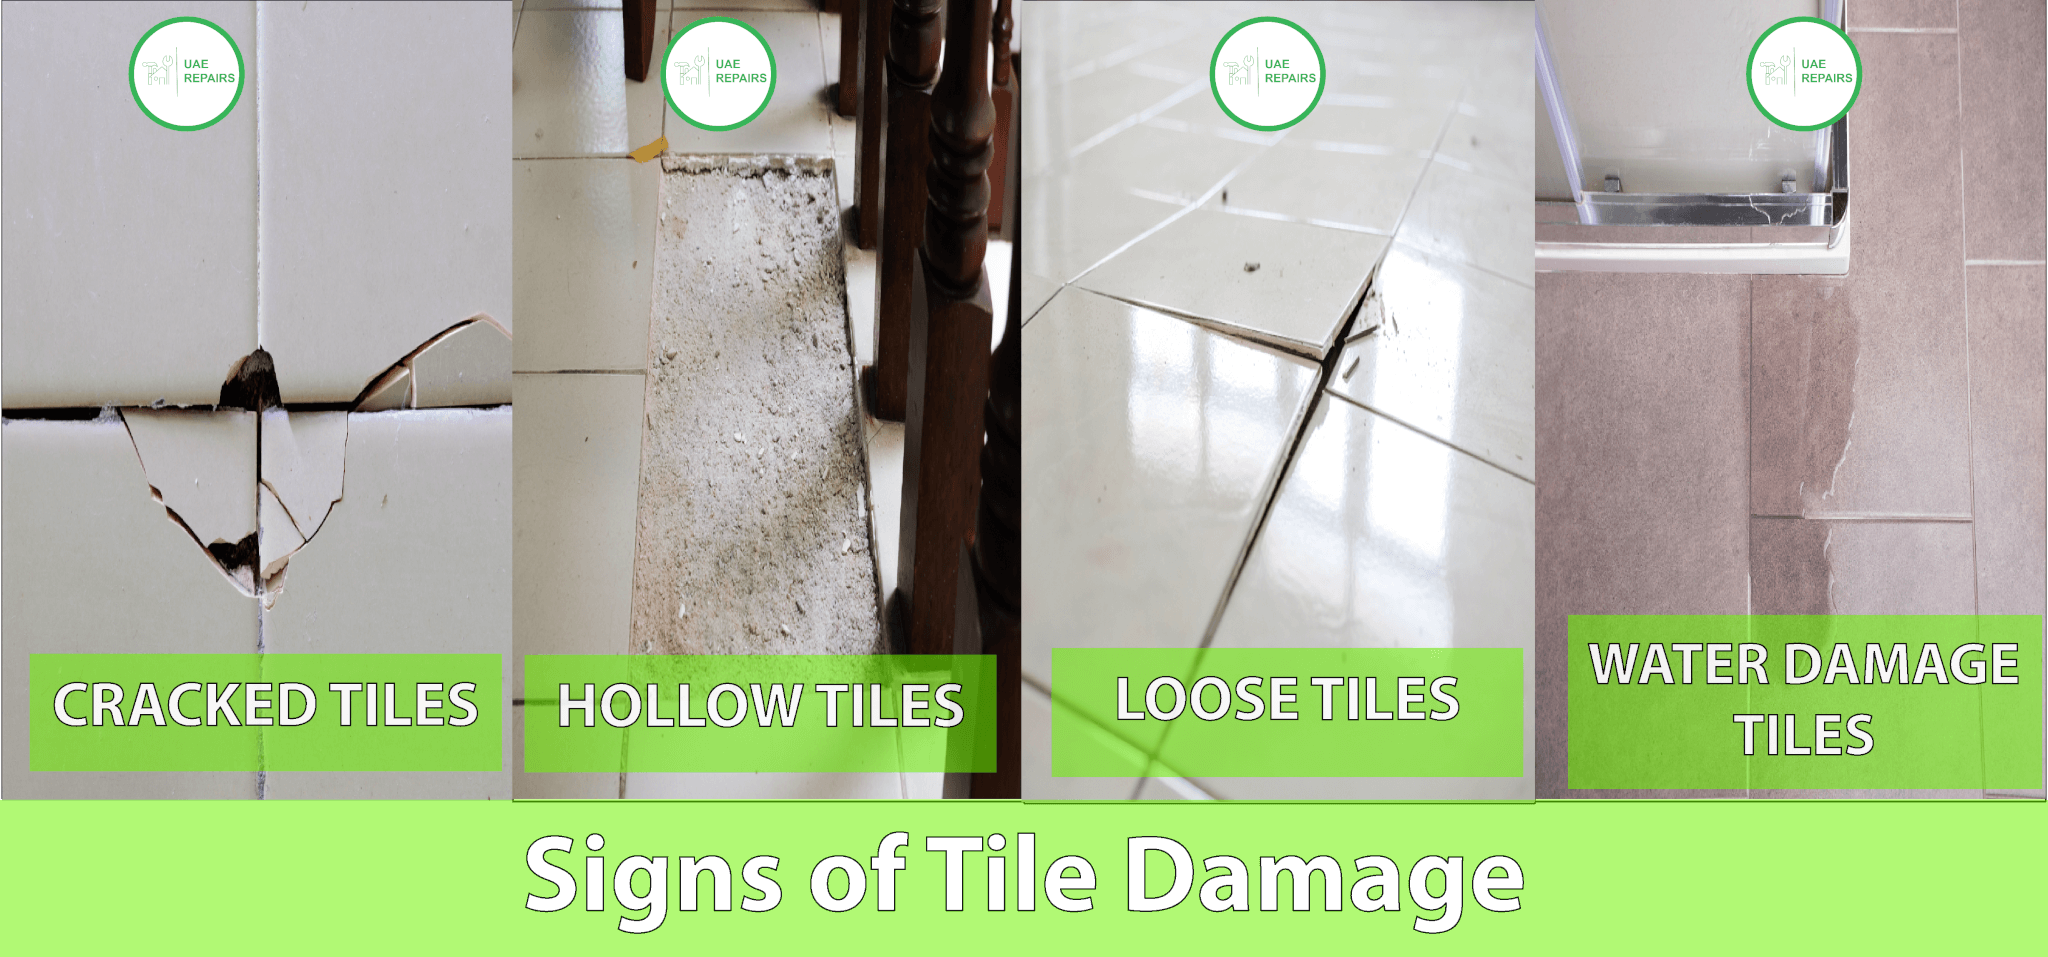 Signs of Tile Damage By UAE REPAIRS